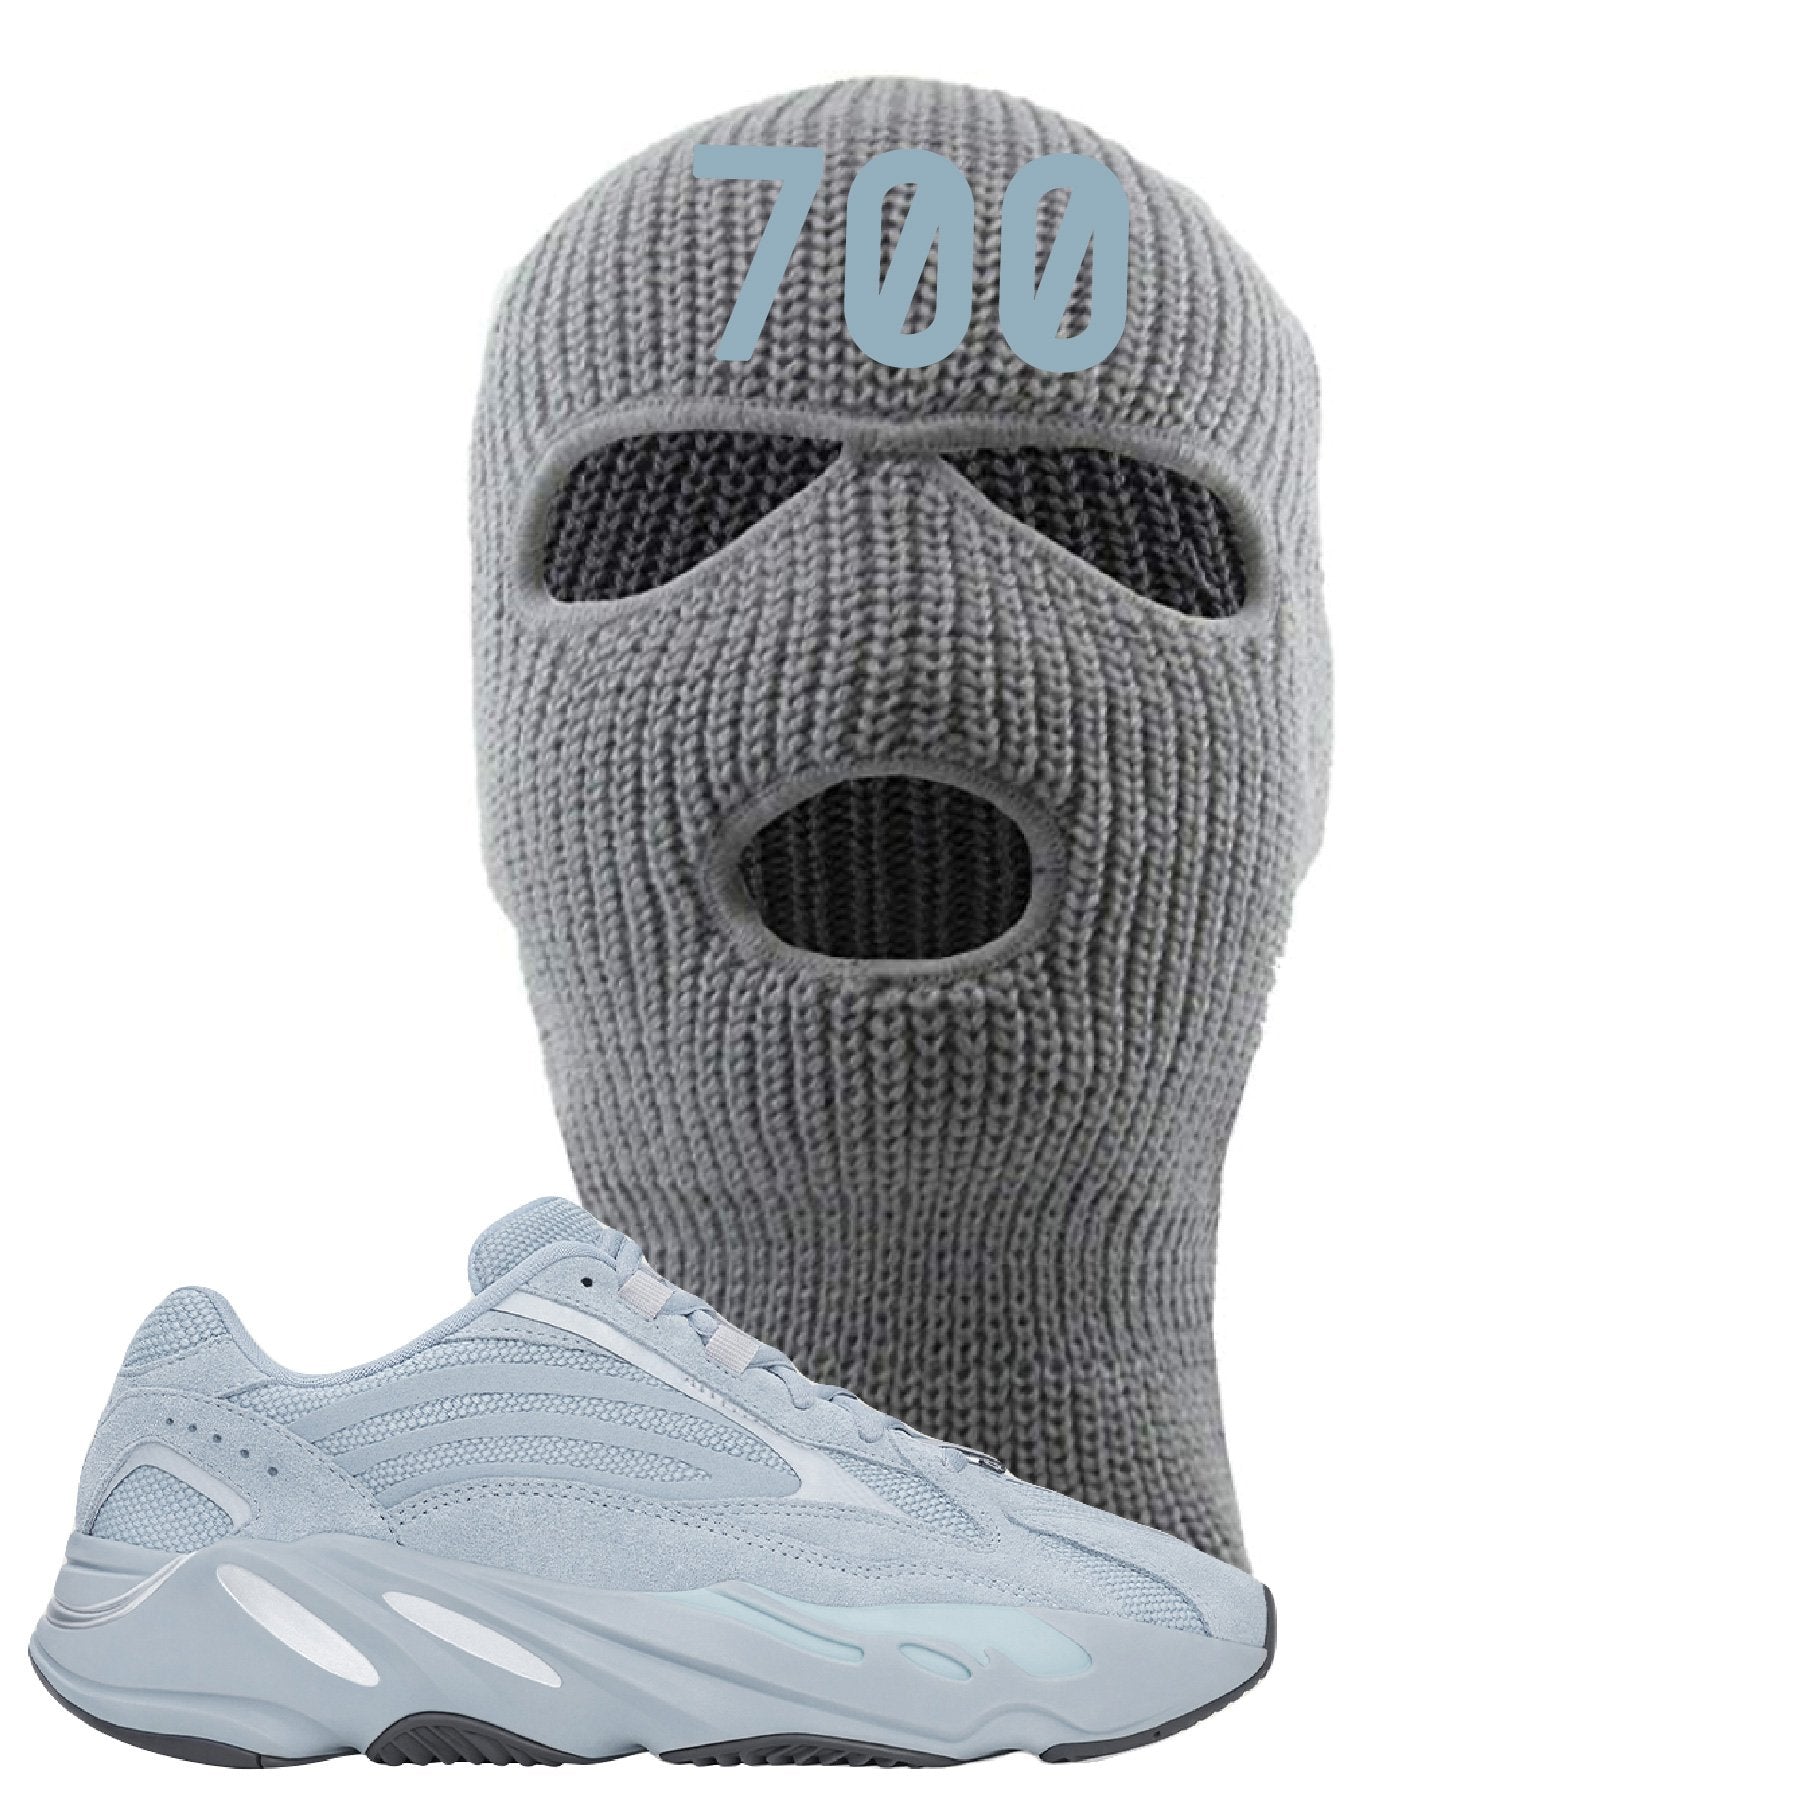 Yeezy Boost 700 V2 Hospital Blue 700 Sneaker Matching White Light Gray